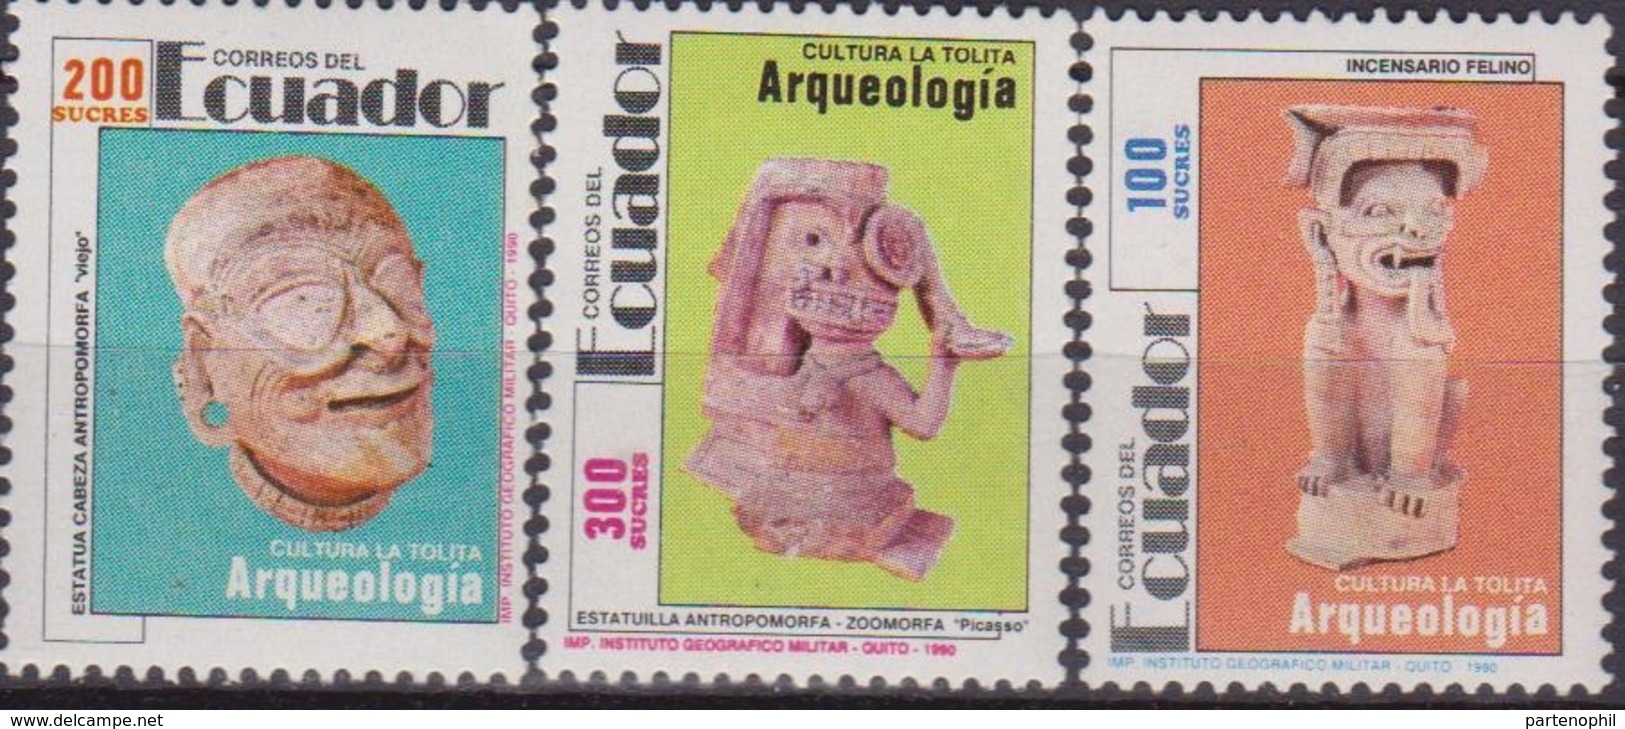 Ecuador Archeologia Archeology Arqueologia Set MNH - Archeologia